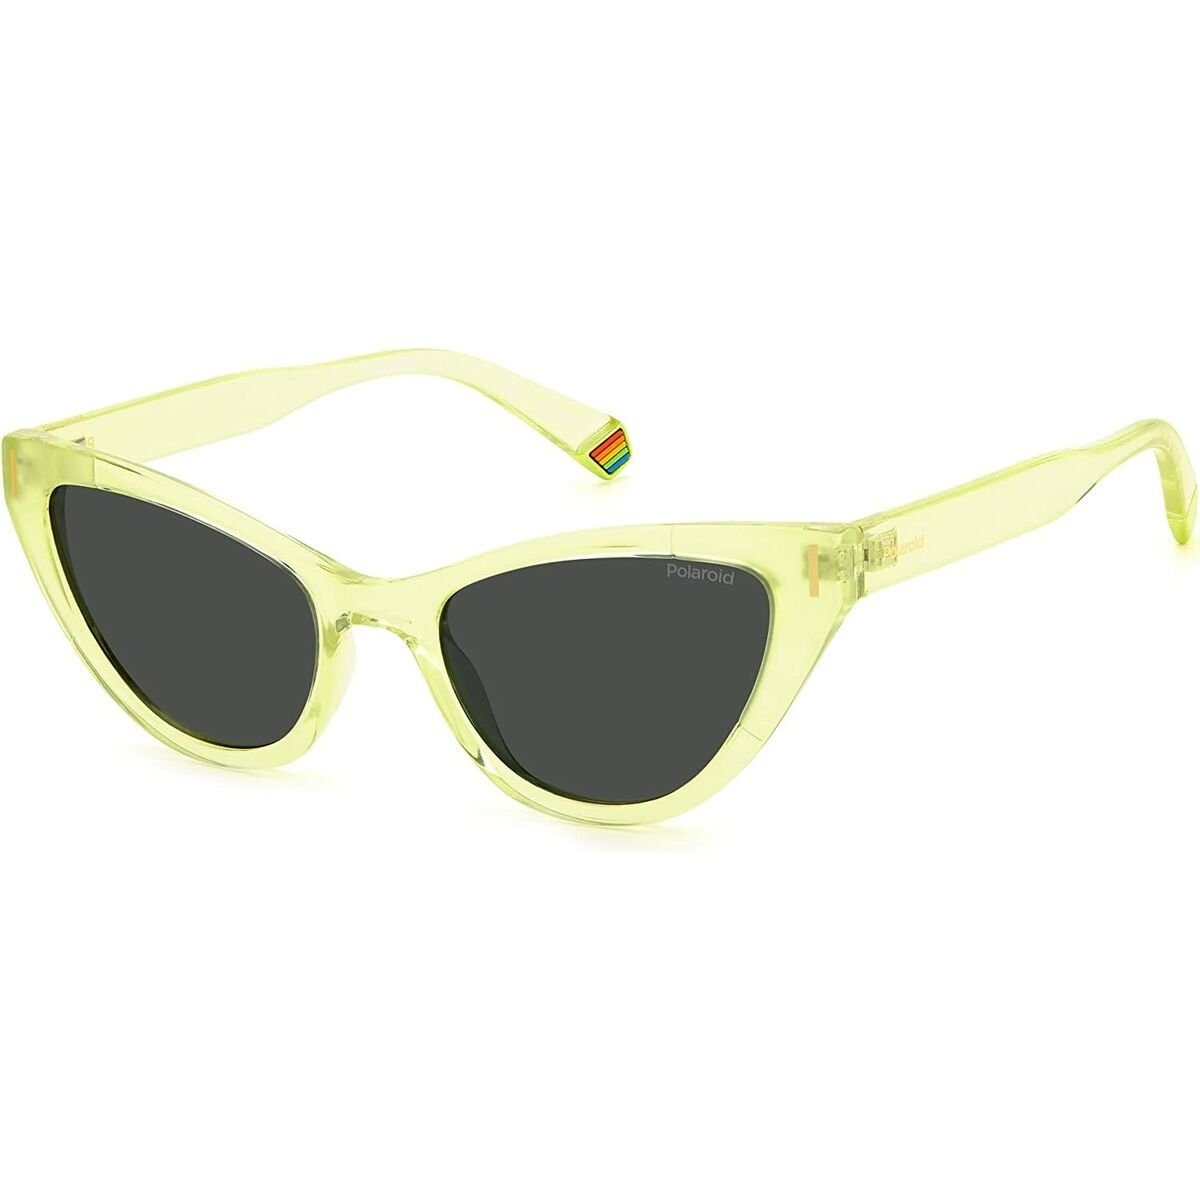 Polaroid Sonnenbrille Damensonnenbrille Polaroid PLD-6174-S-40G-M9 UV400